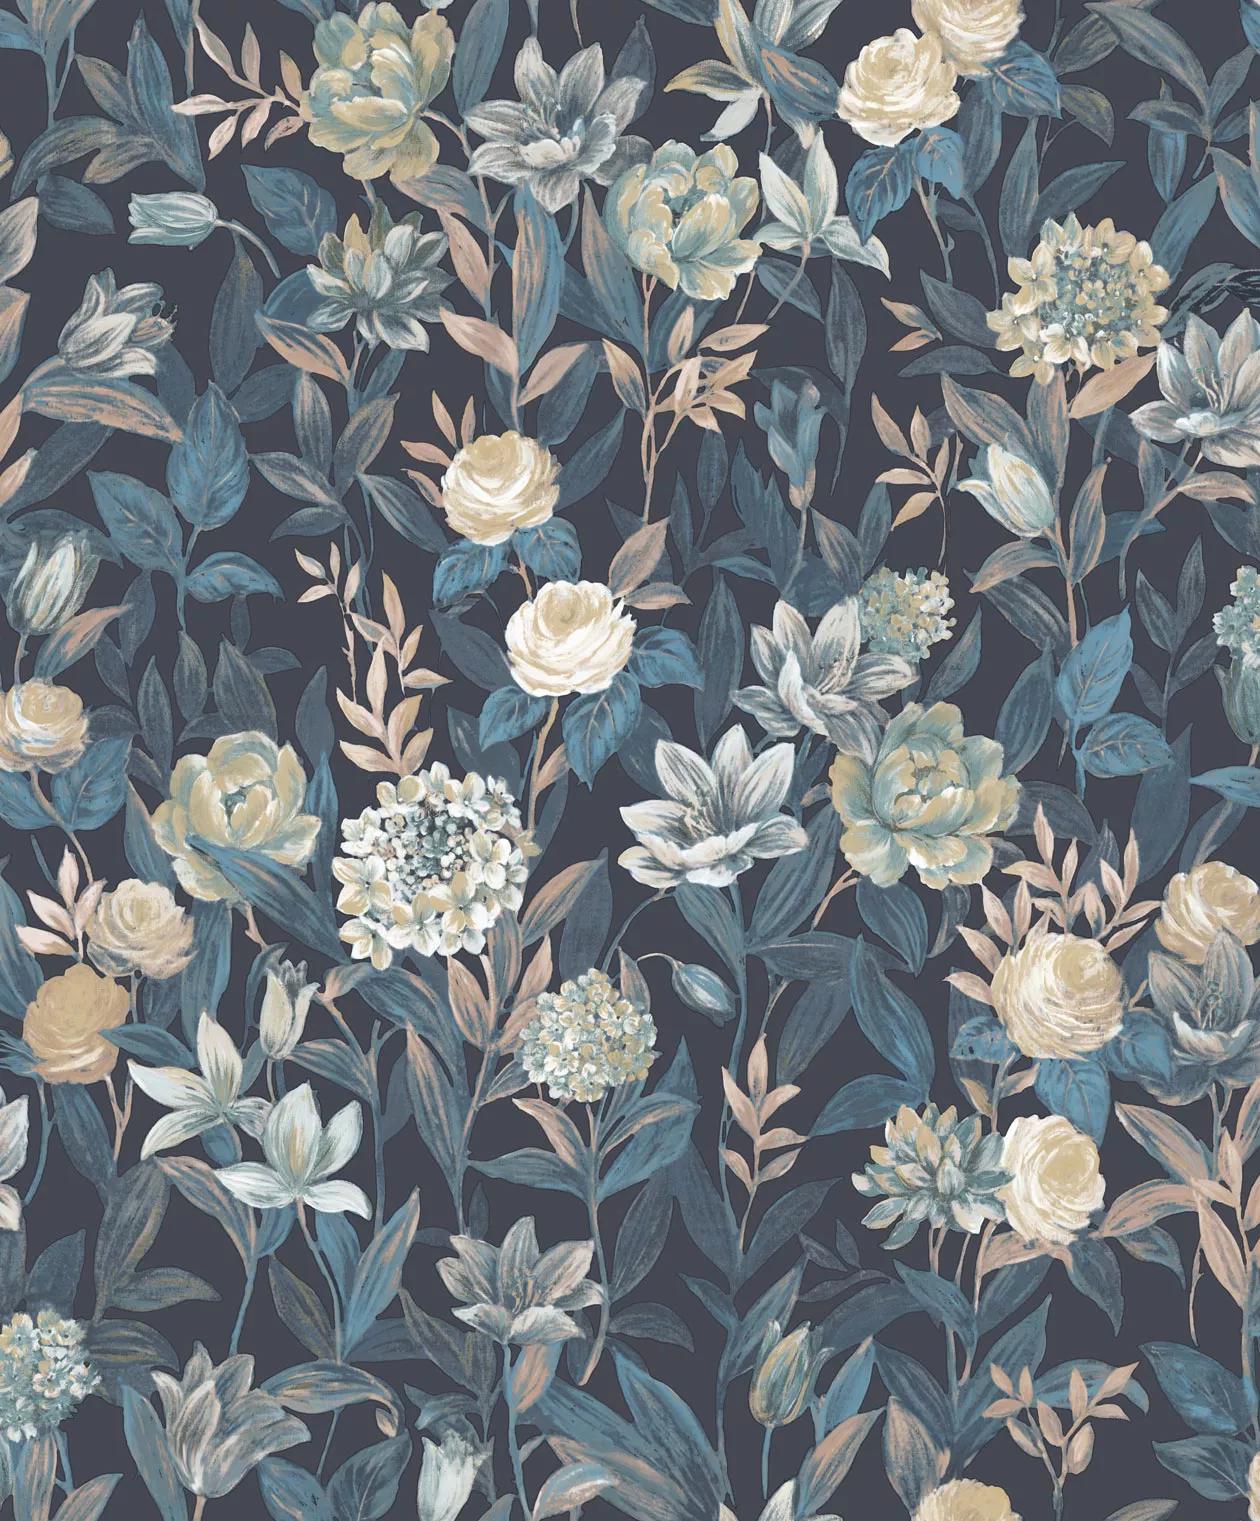 Romantikus mezei virágmintás tapéta kék színvilágban